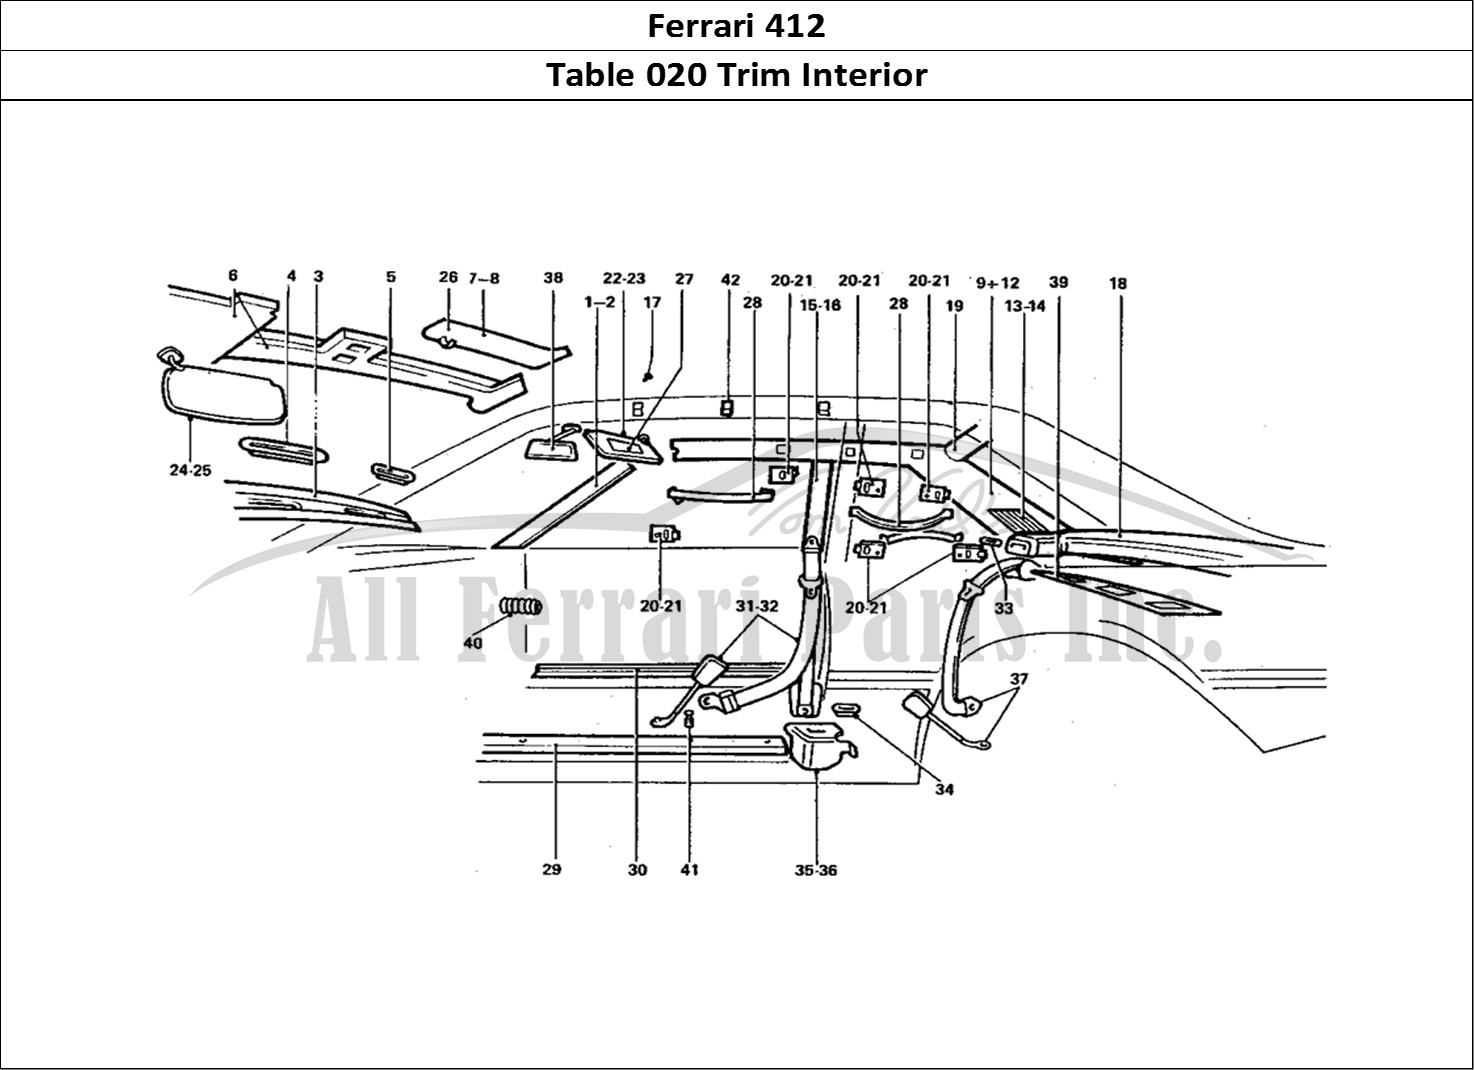 Ferrari Parts Ferrari 412 (Coachwork) Page 020 Seat Belts & Sun Visors